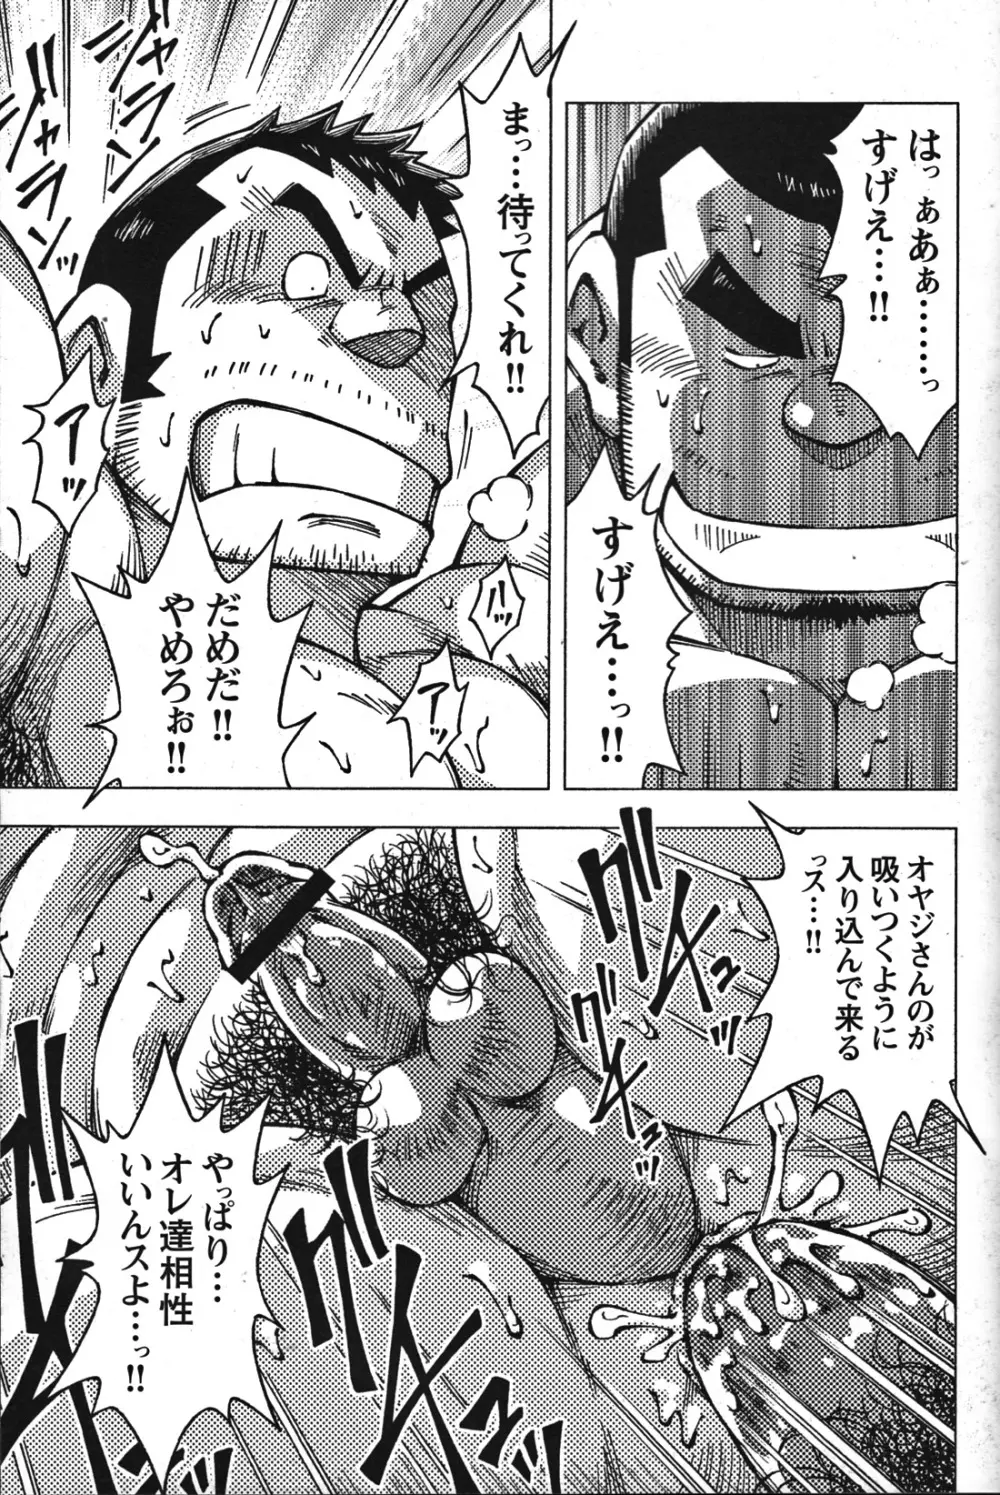 Comic G-men Gaho No.07 62ページ